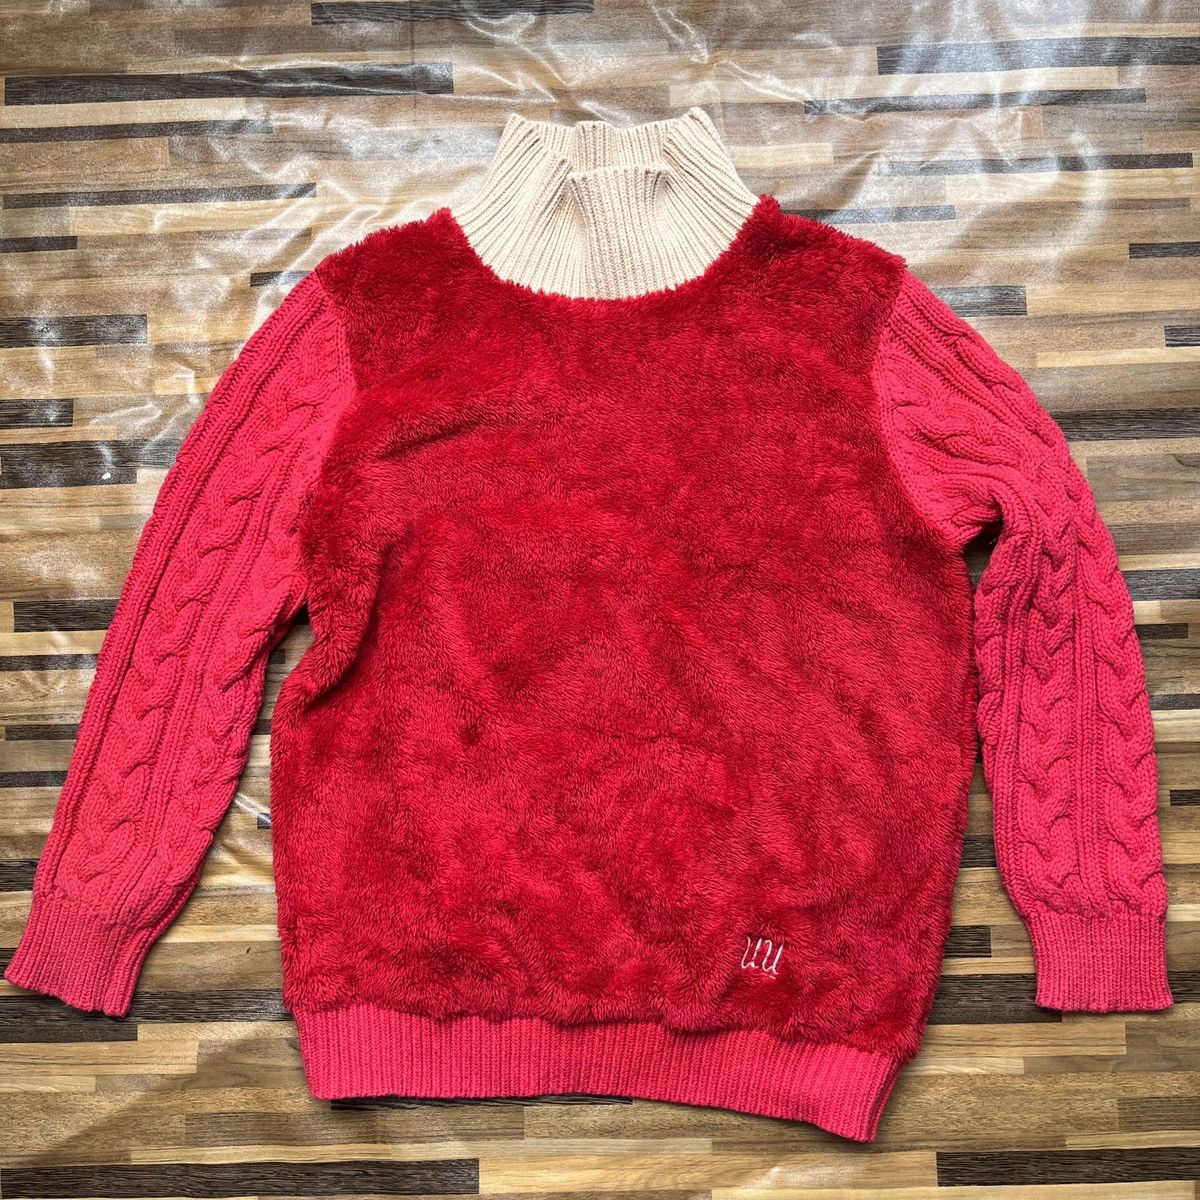 Undercover X Uniqlo Sweater Rare Red Colour - 19